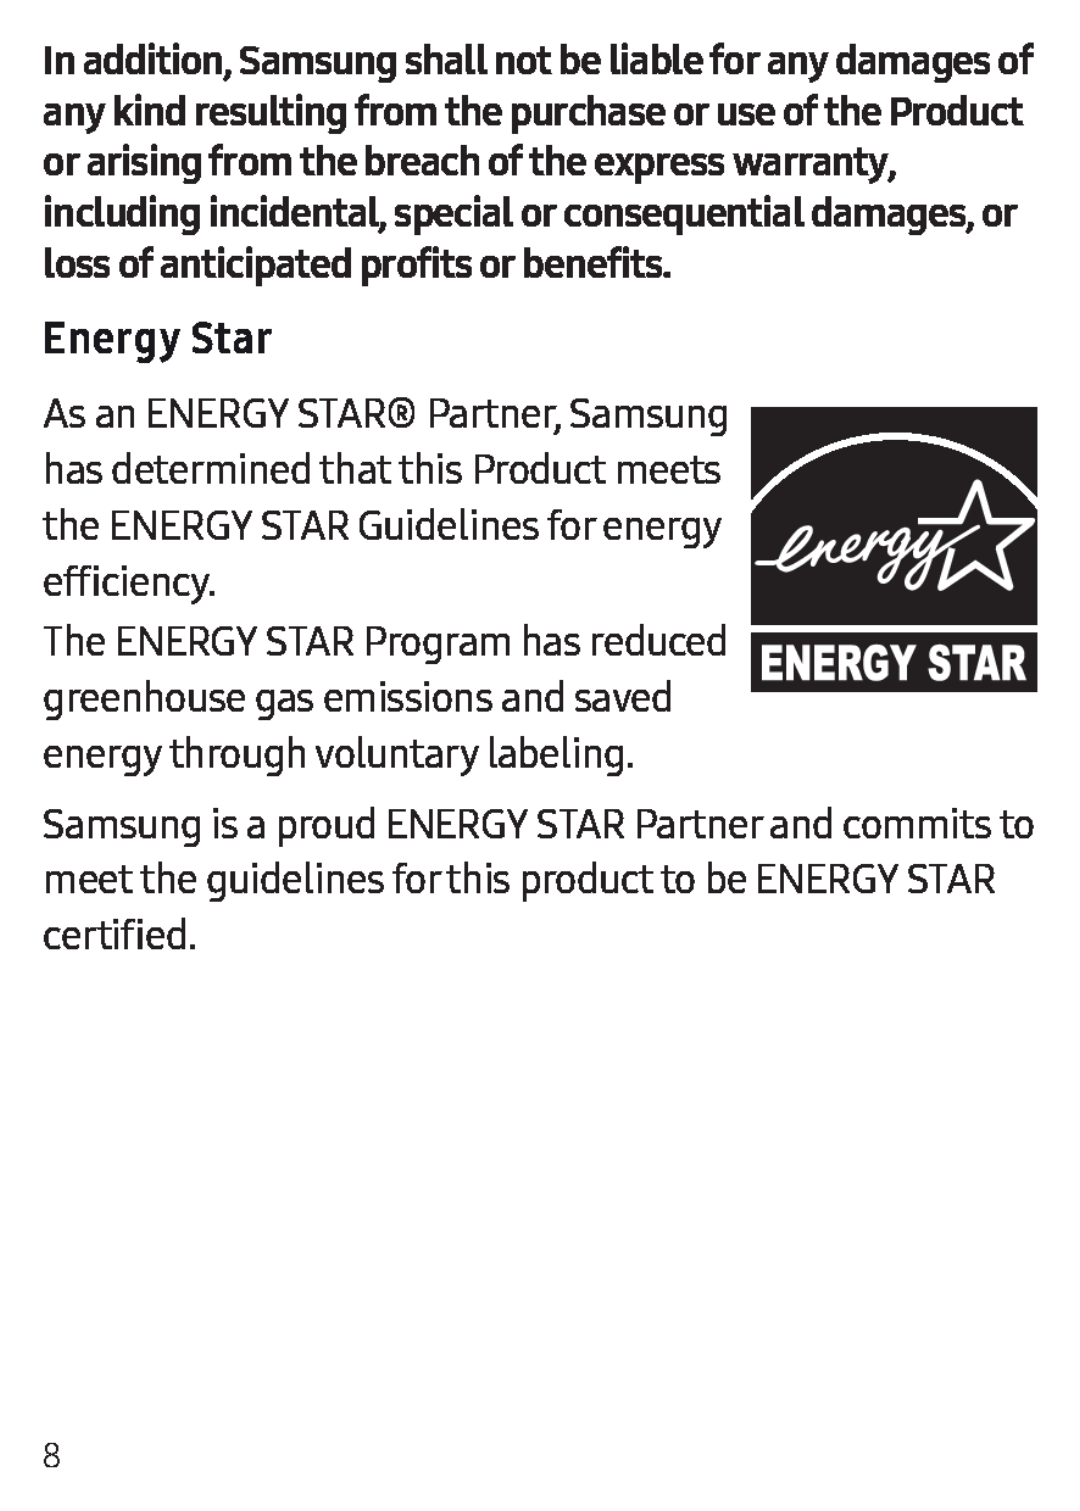 Energy Star Galaxy Tab E 8.0 US Cellular